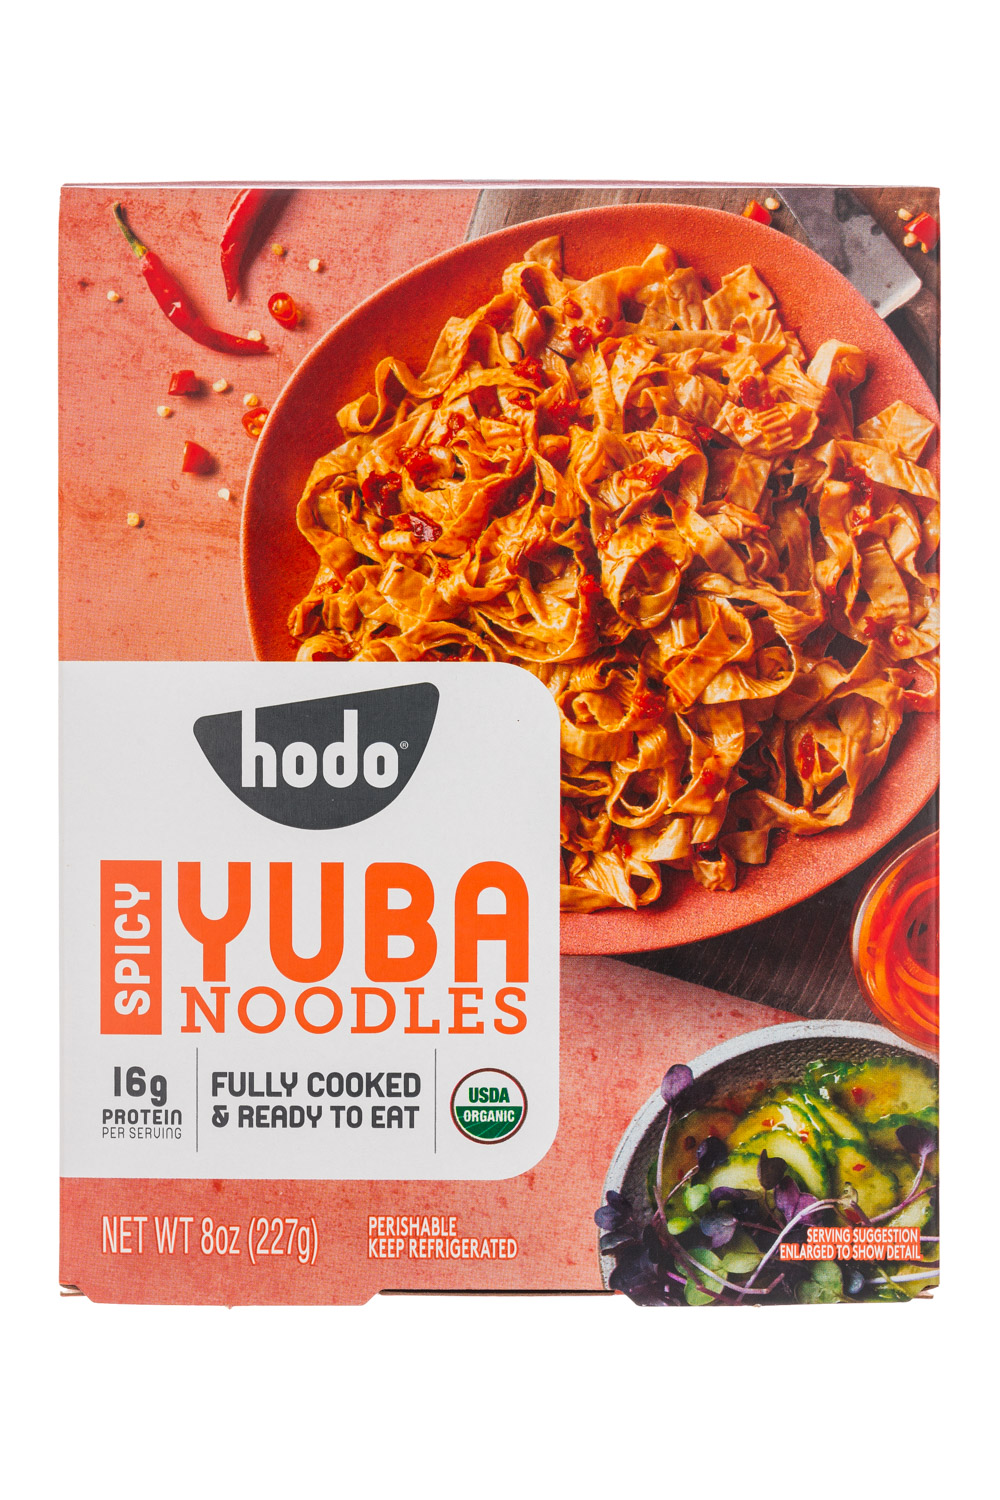 Spicy Yuba Noodles